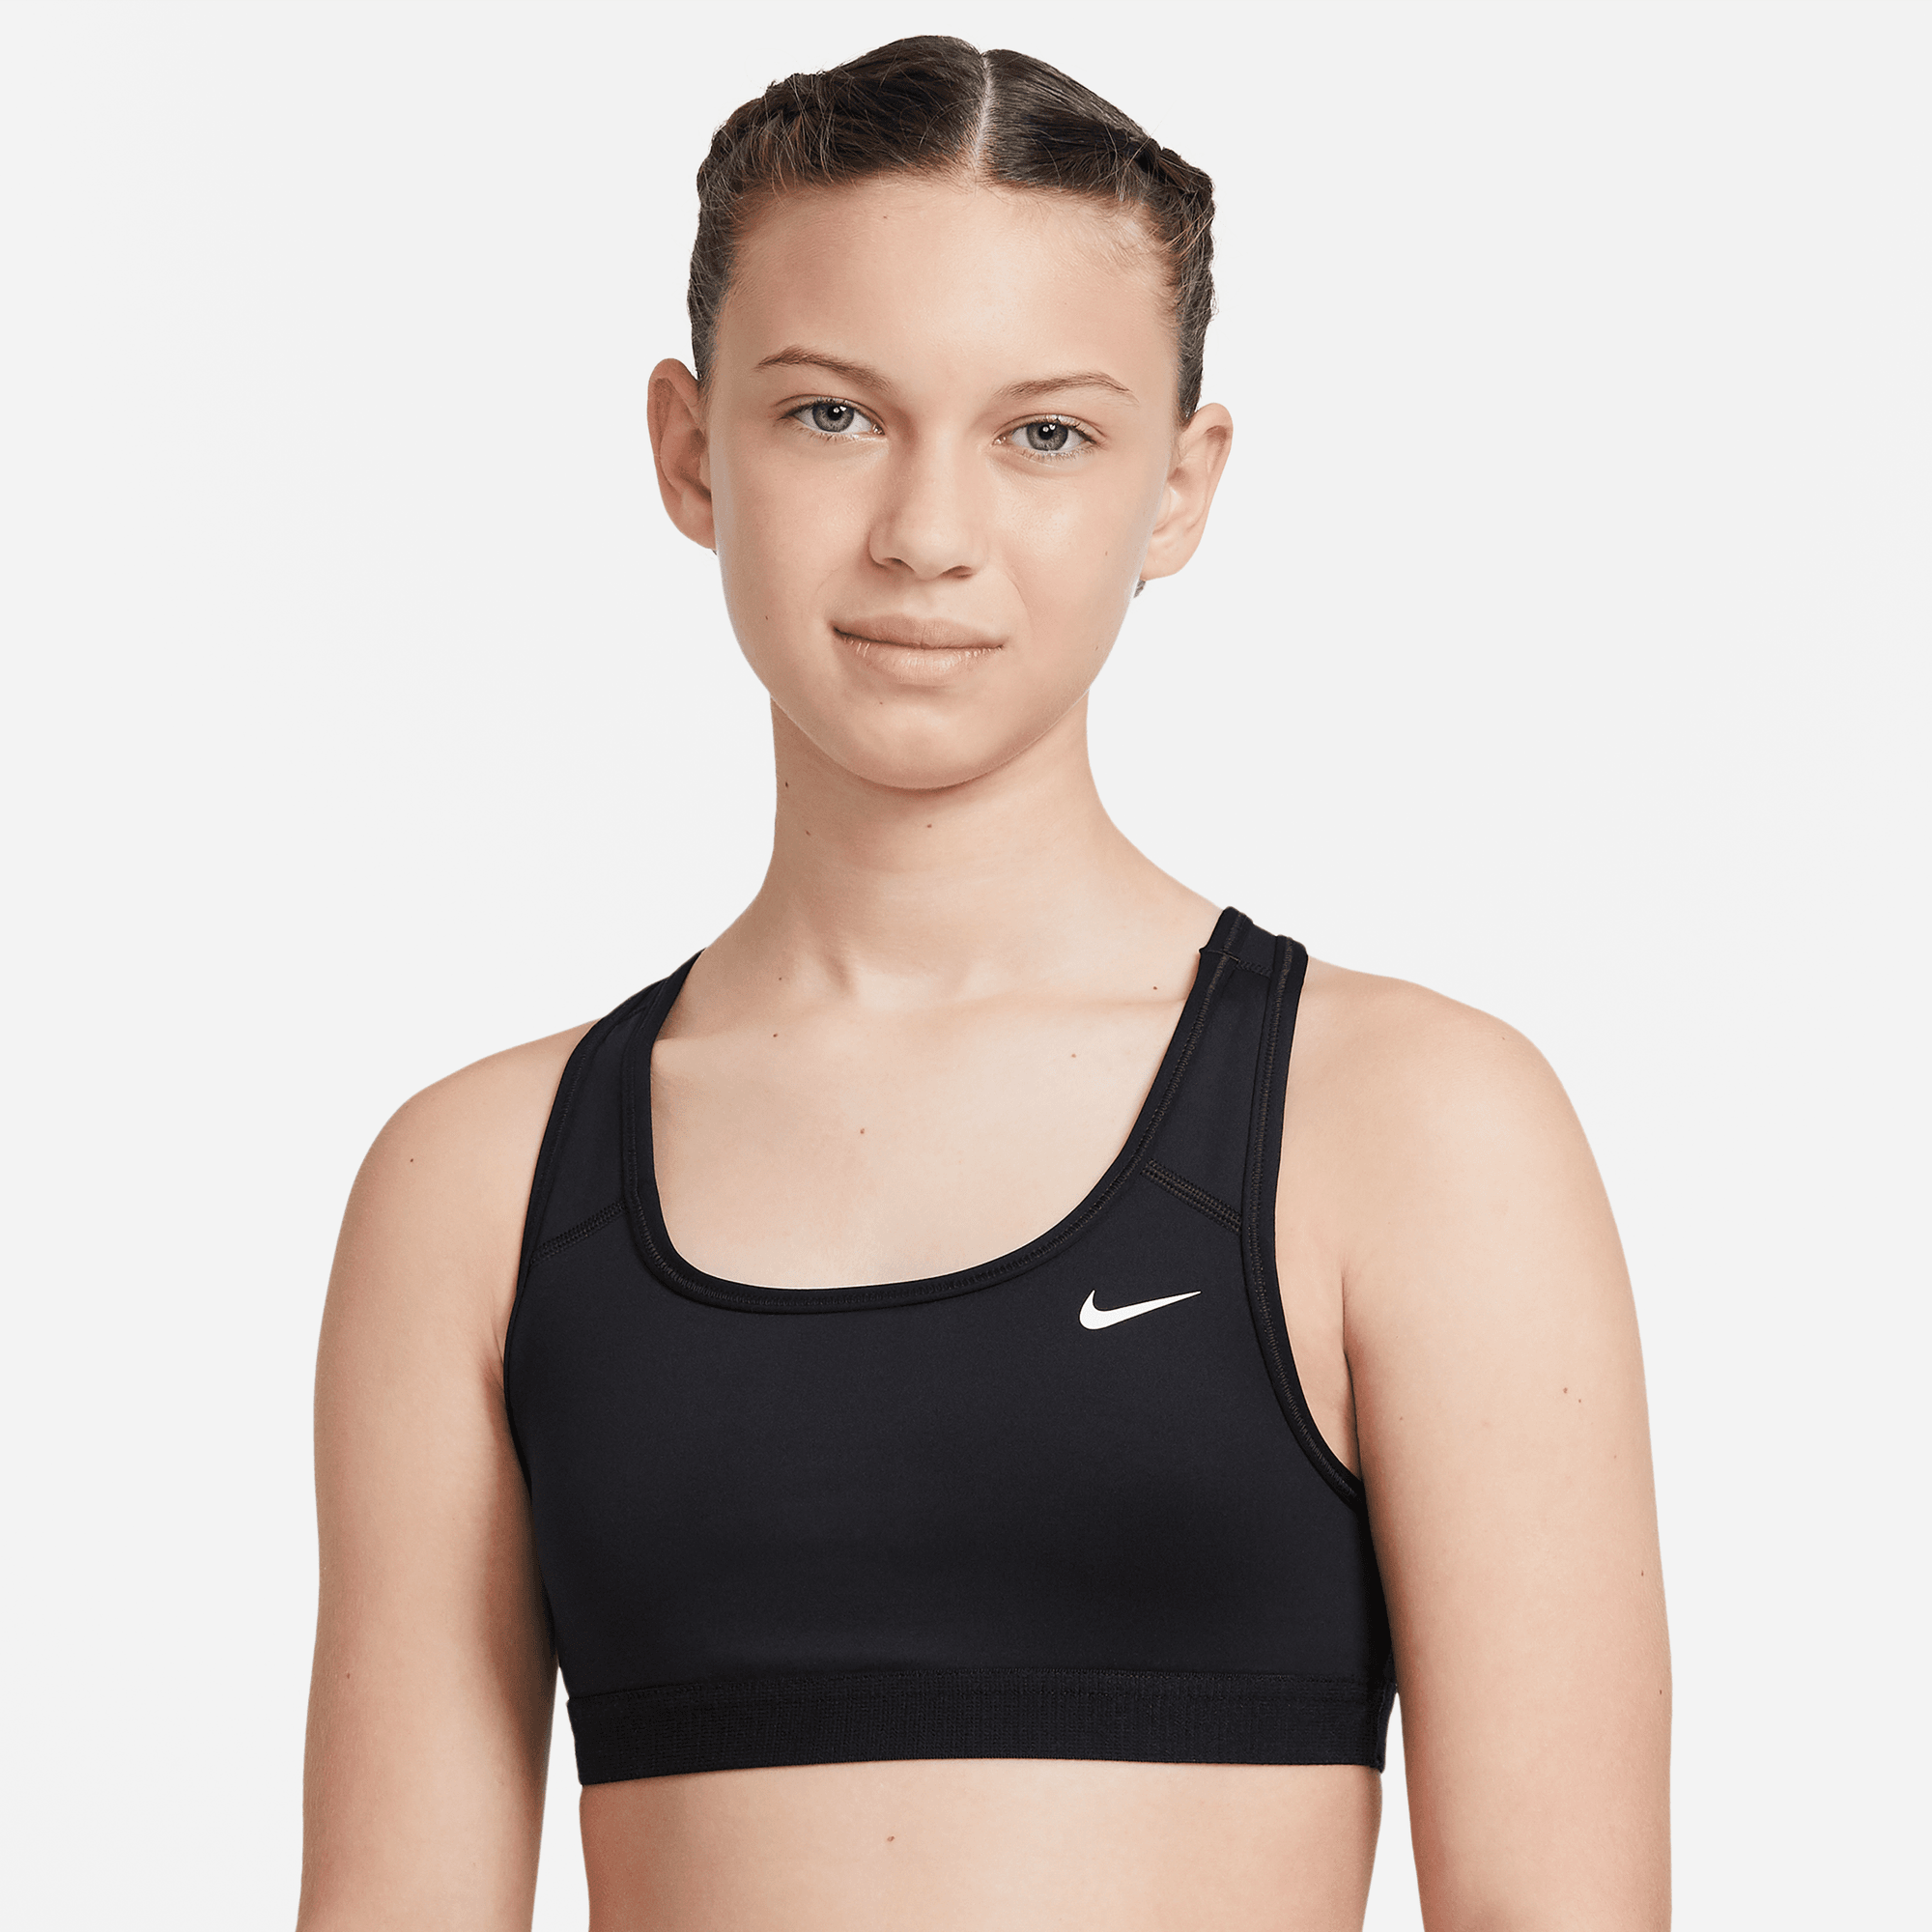 Nike Pro Swoosh Girls' Dri-FIT Sports Bra